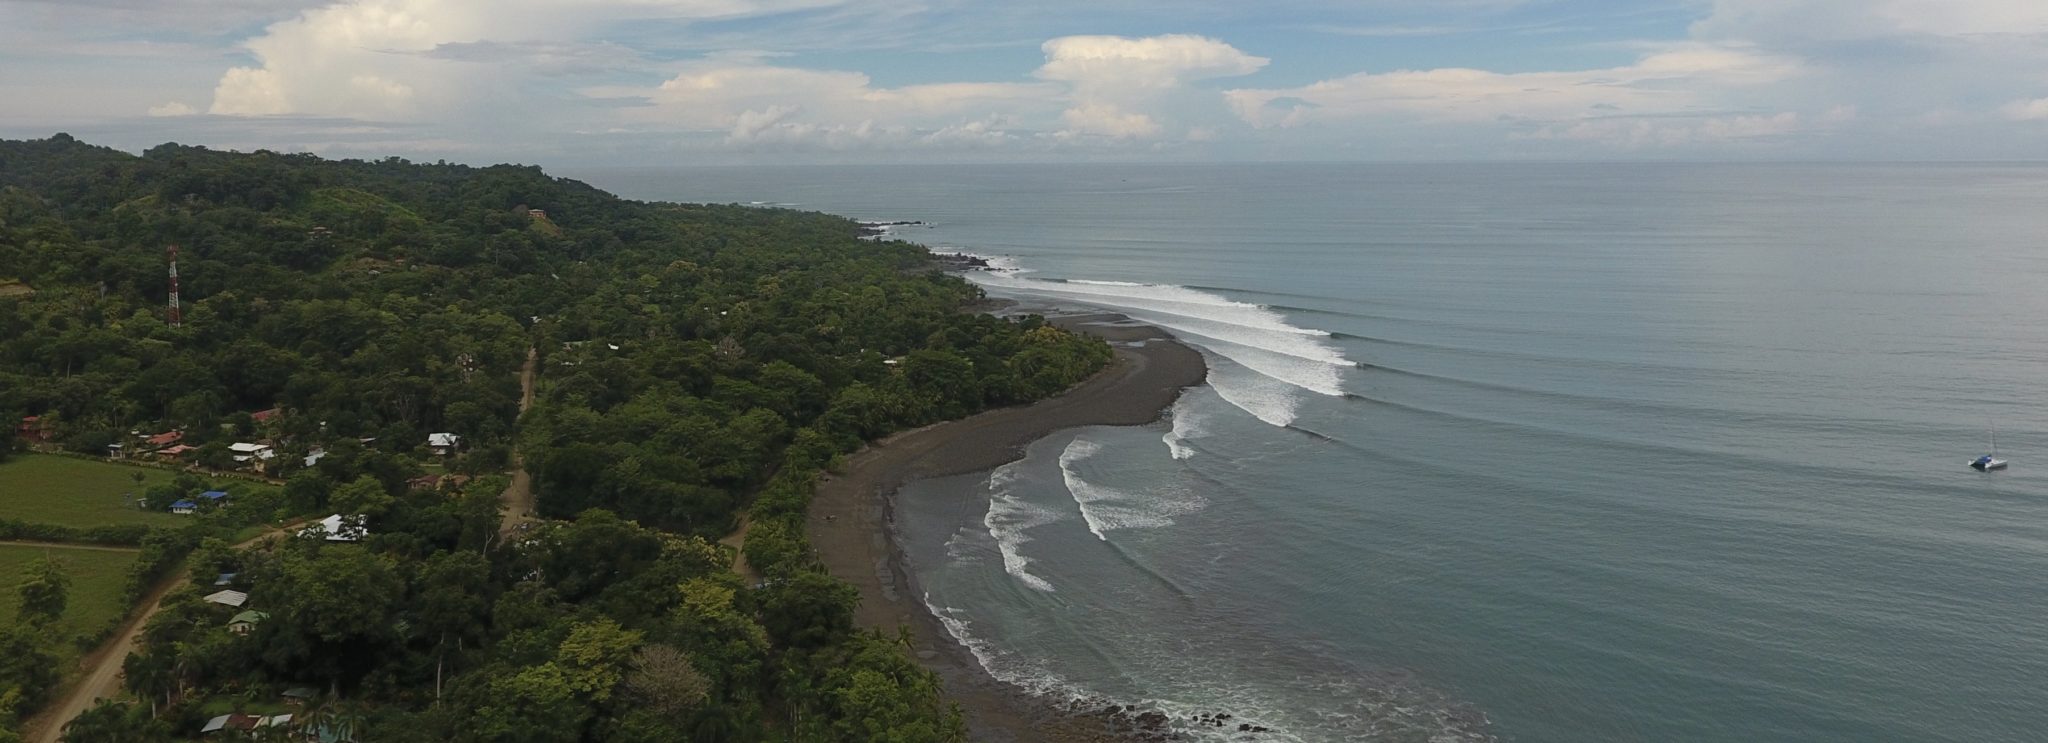 Pavones, Costa Rica Surf Report